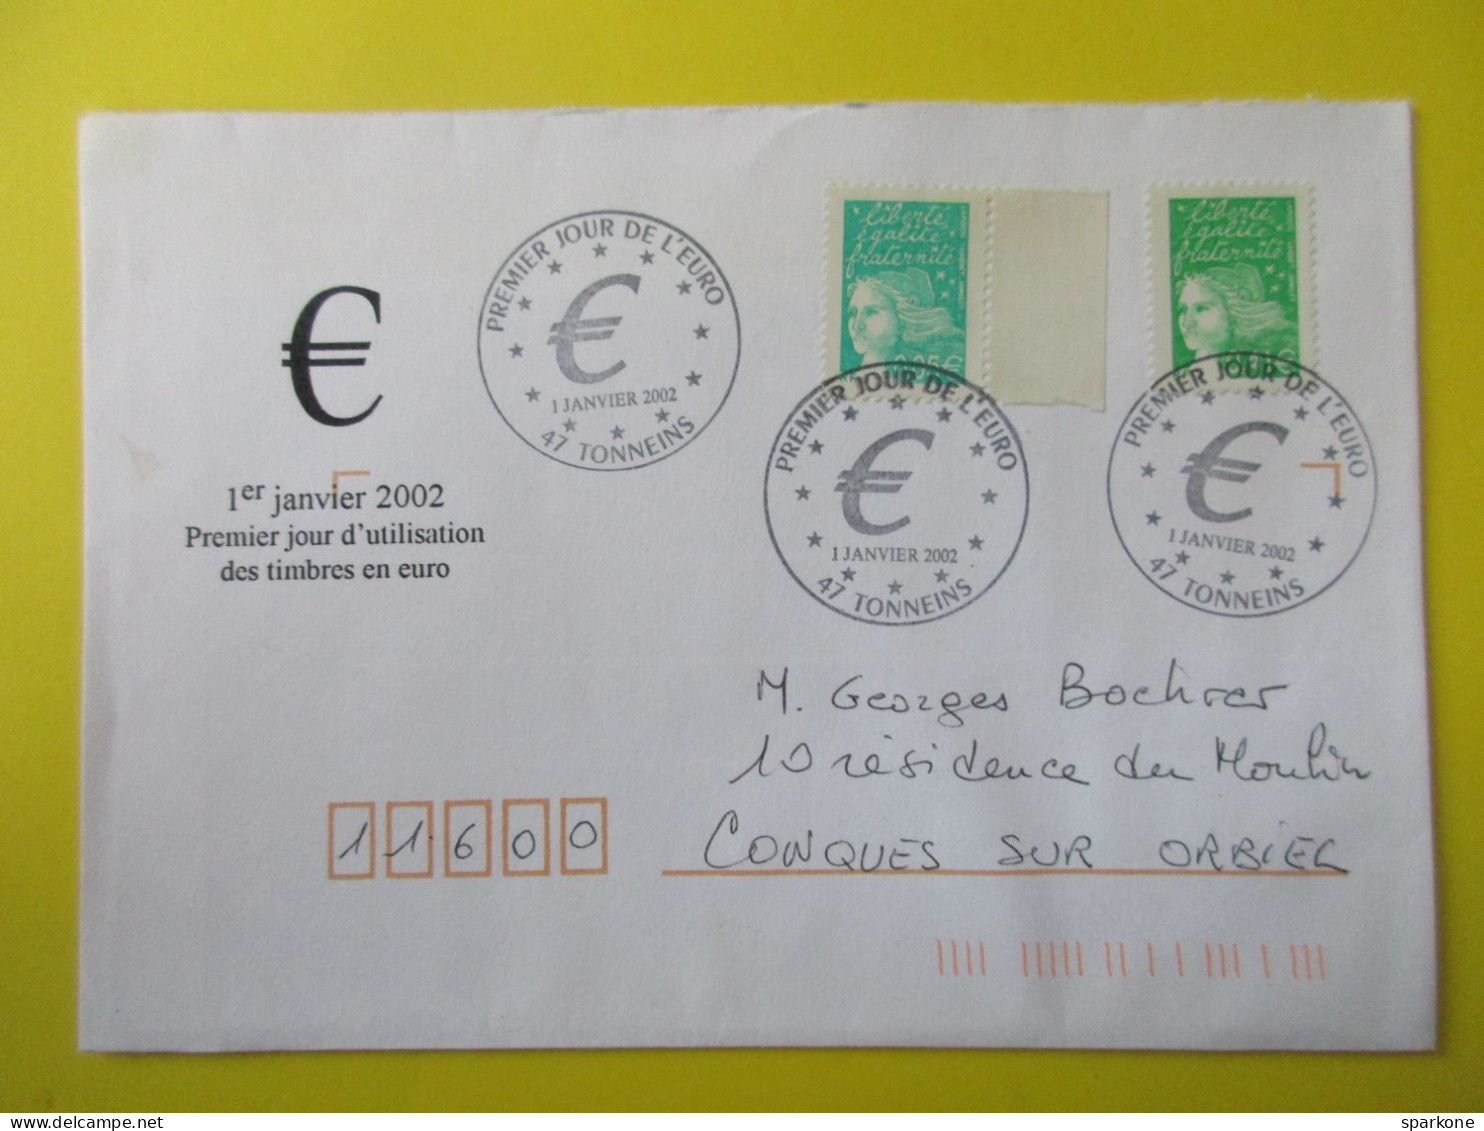 Marcophilie - Enveloppe - France - Cachet Commémoratif - Timbres Poste En €uros - 01 Janvier 2002 - Gedenkstempels